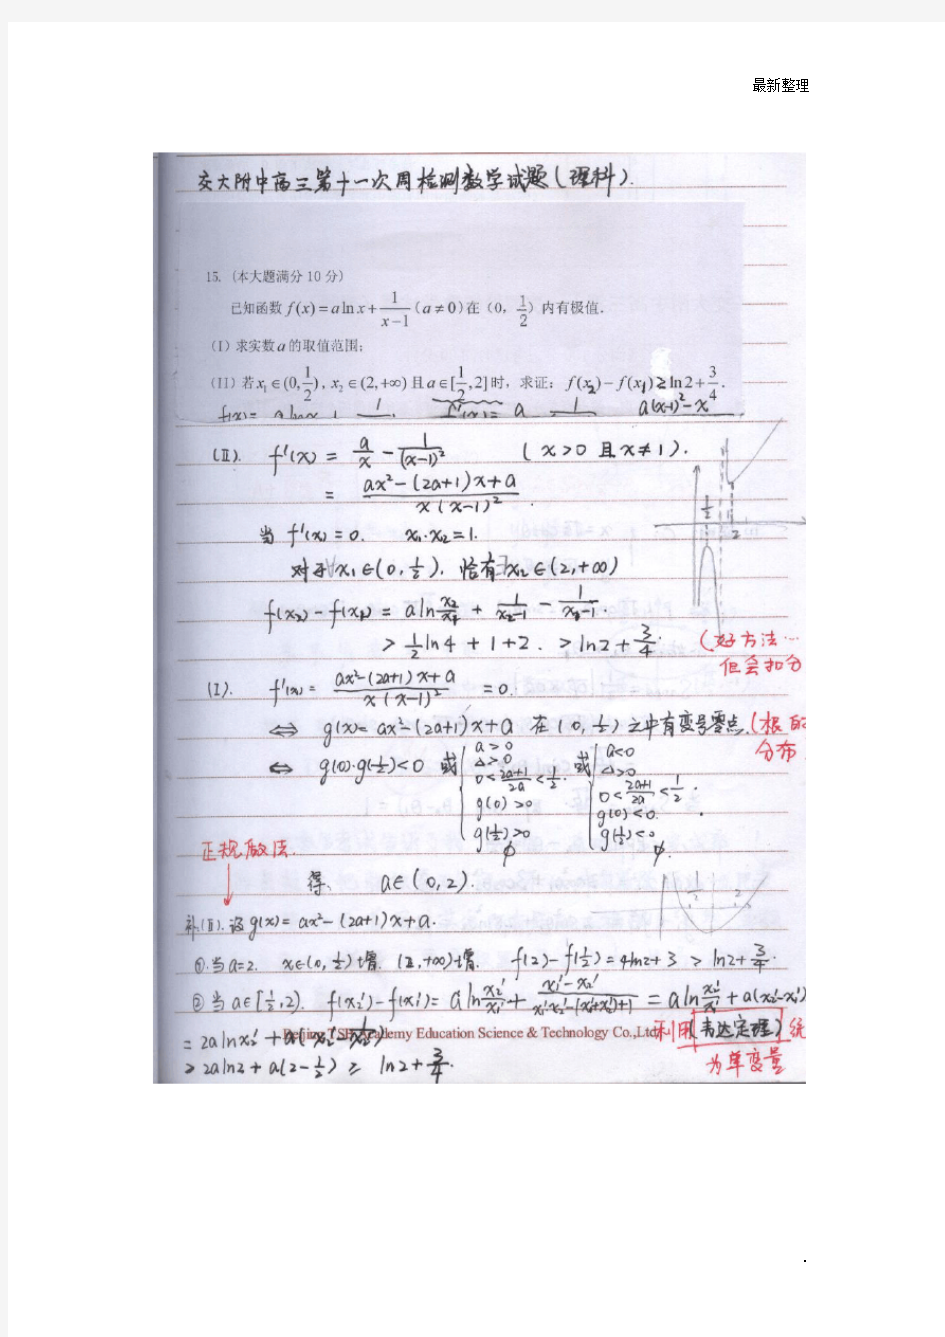 西安交大附中理科学霸高中数学笔记_高考状元笔记